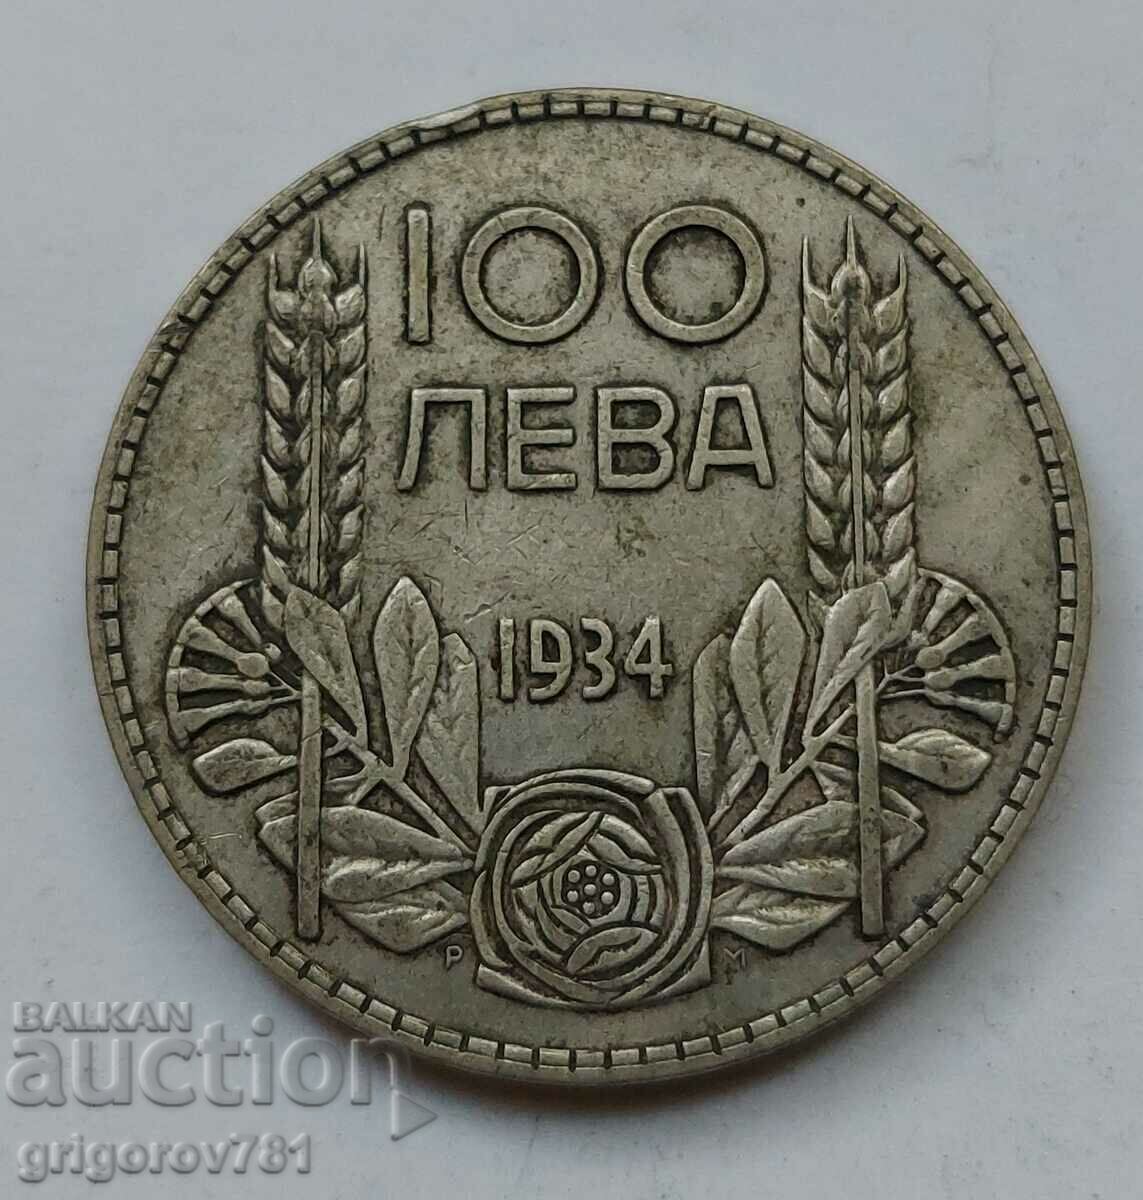 100 leva silver Bulgaria 1934 - silver coin #73